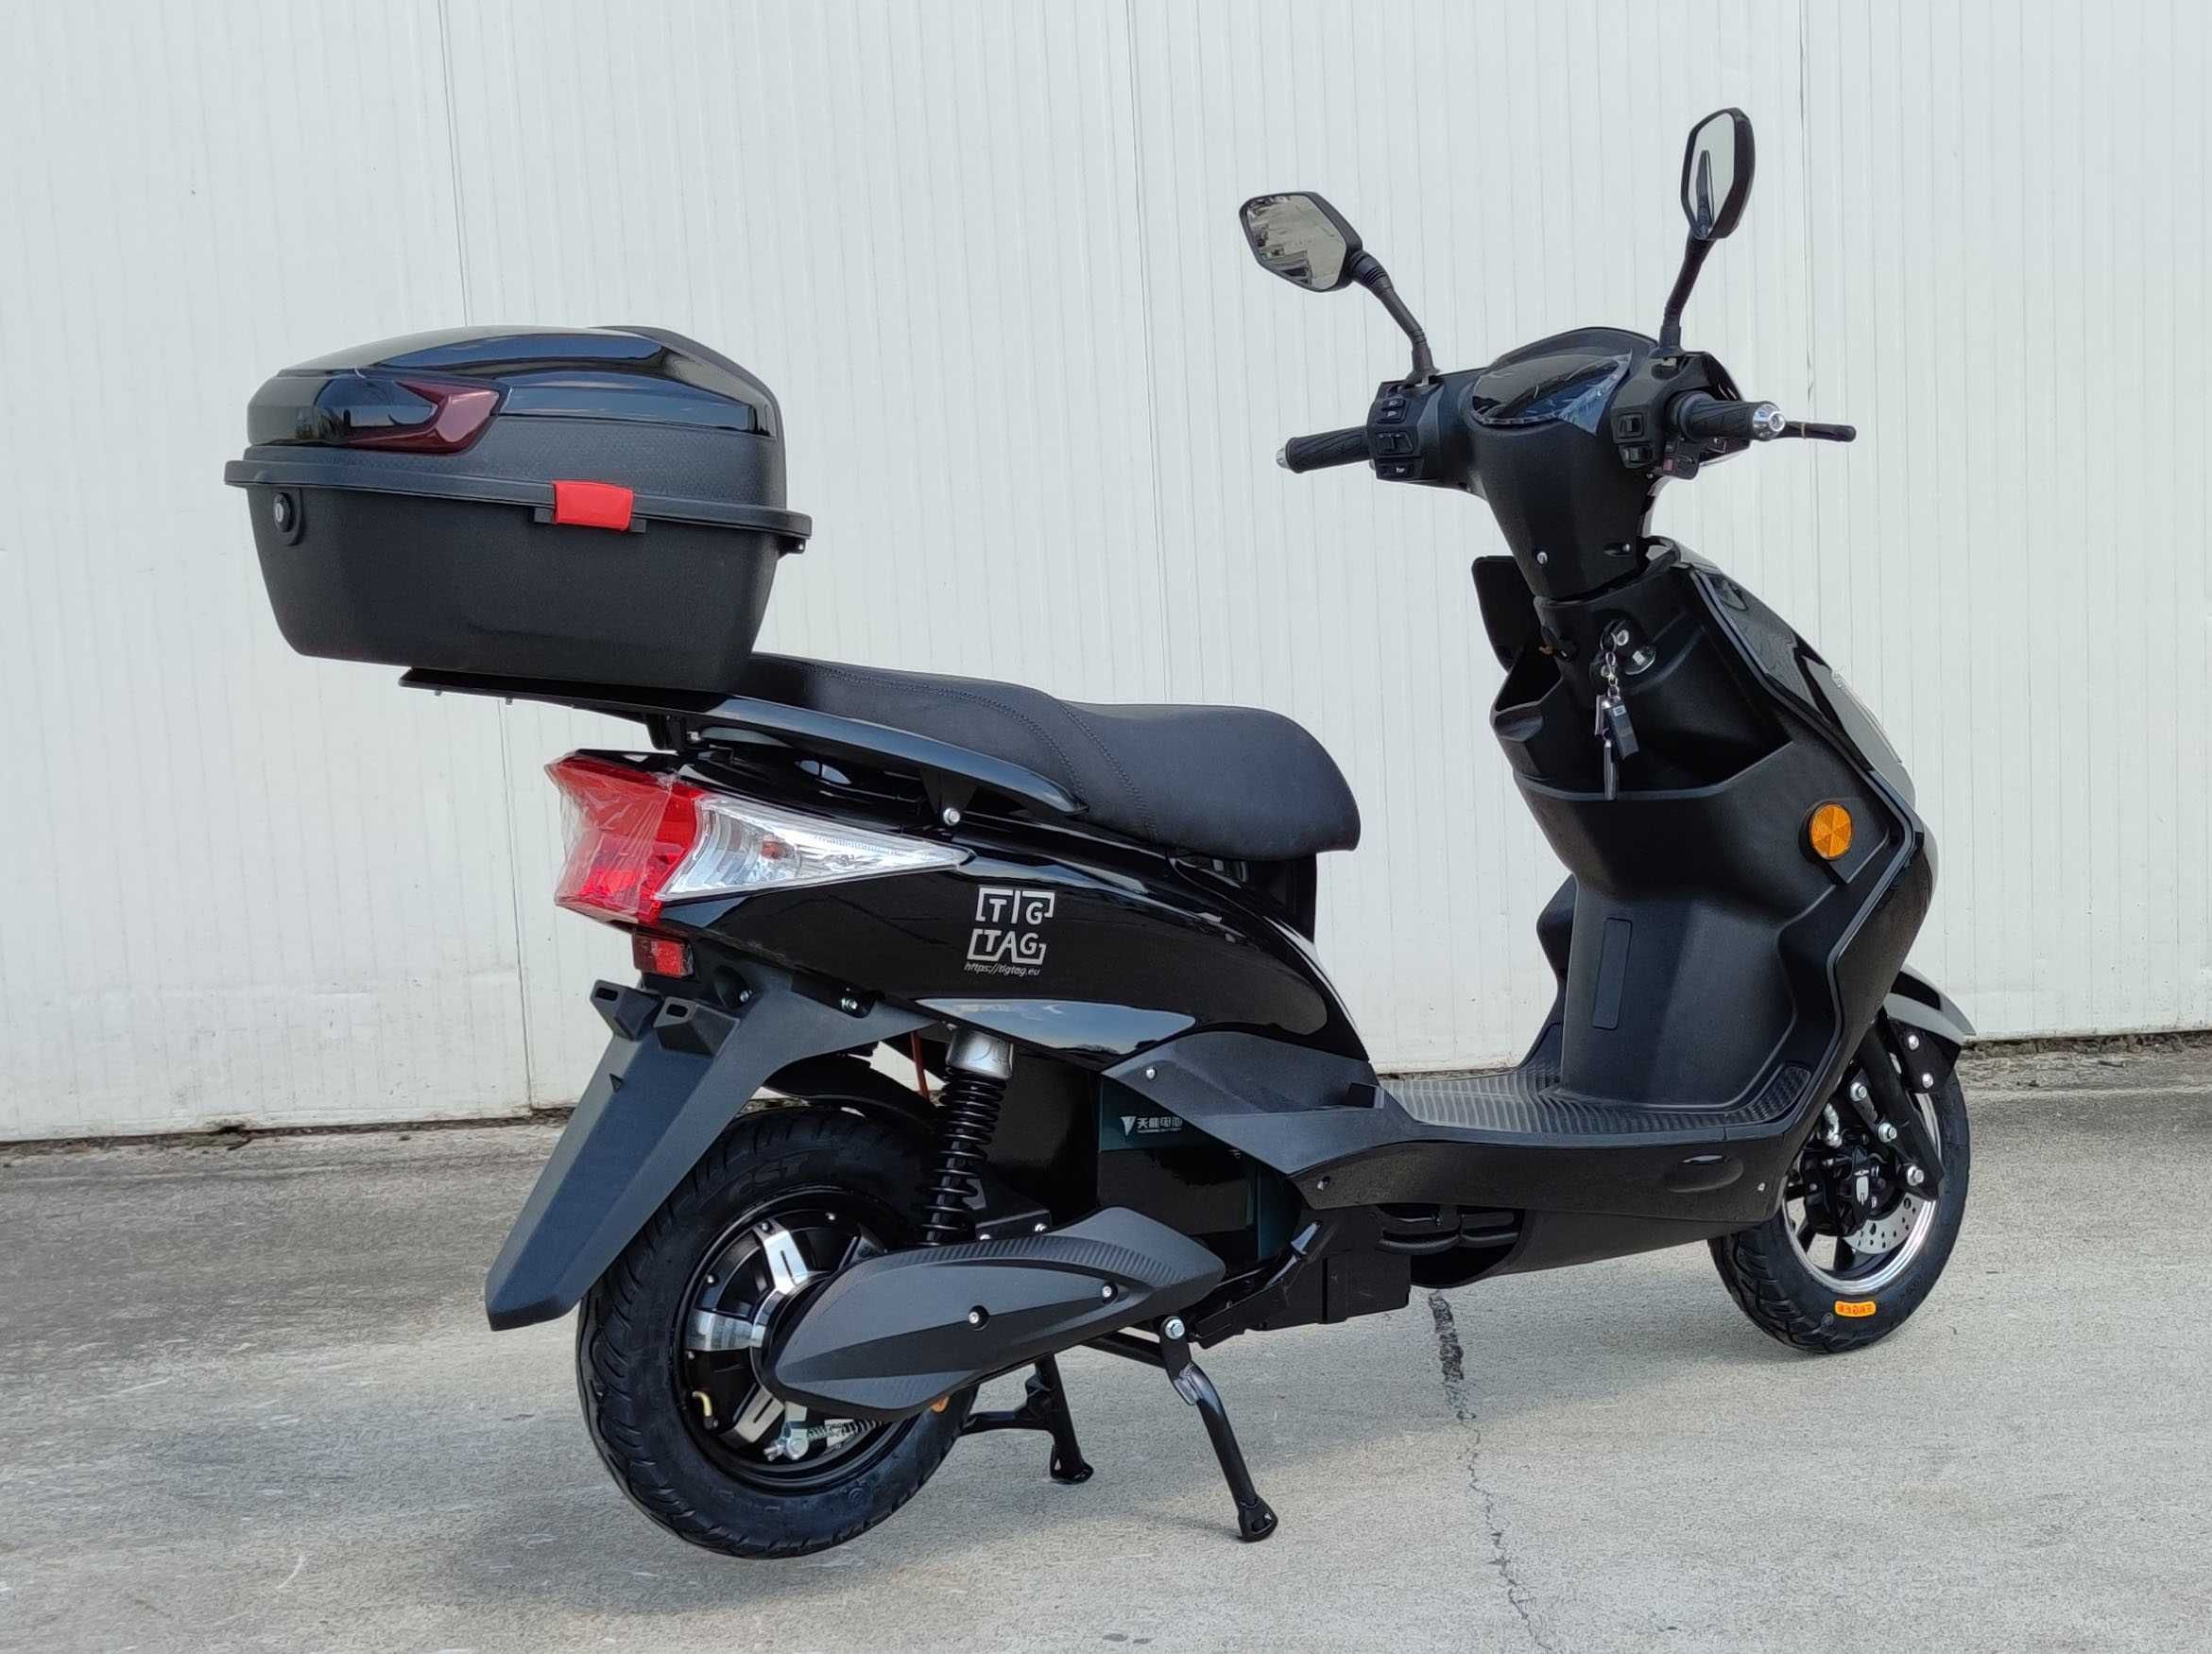 Електрически скутер My Force черен цвят с регистрация и багажник